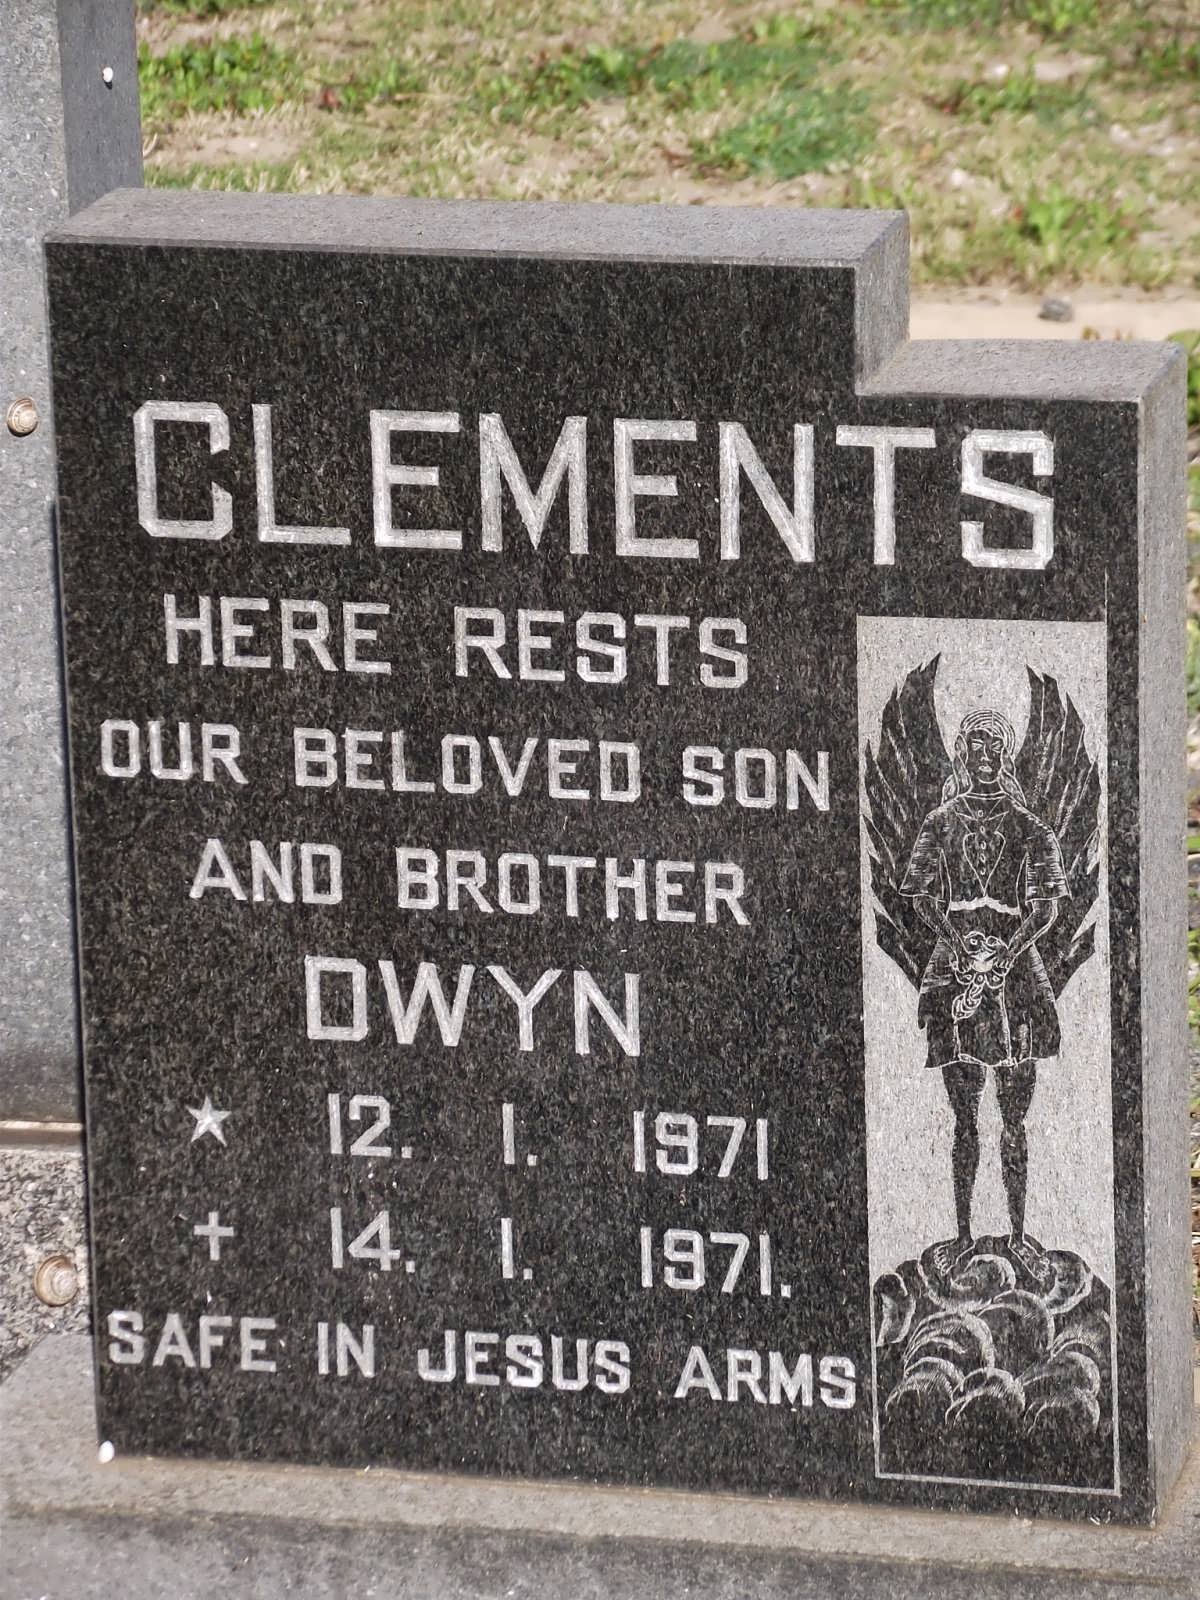 CLEMENTS Dwyn 1971-1971